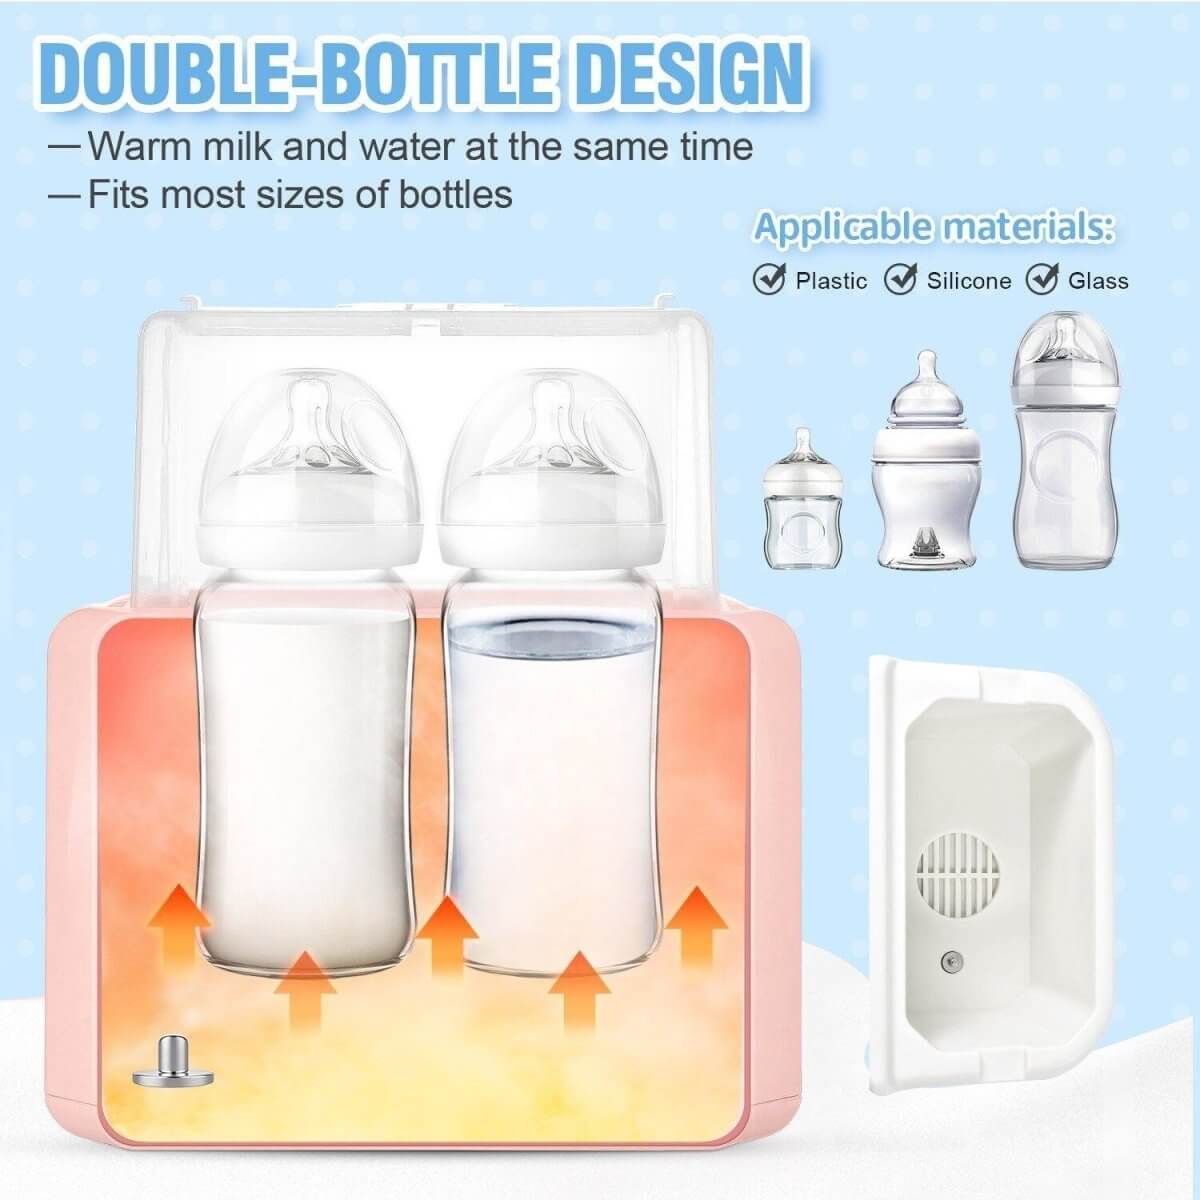 6 in 1 Function Baby Bottle Warmer & Sterilizer 6 in 1 Function Baby Bottle Warmer & Sterilizer Baby Bubble Store 